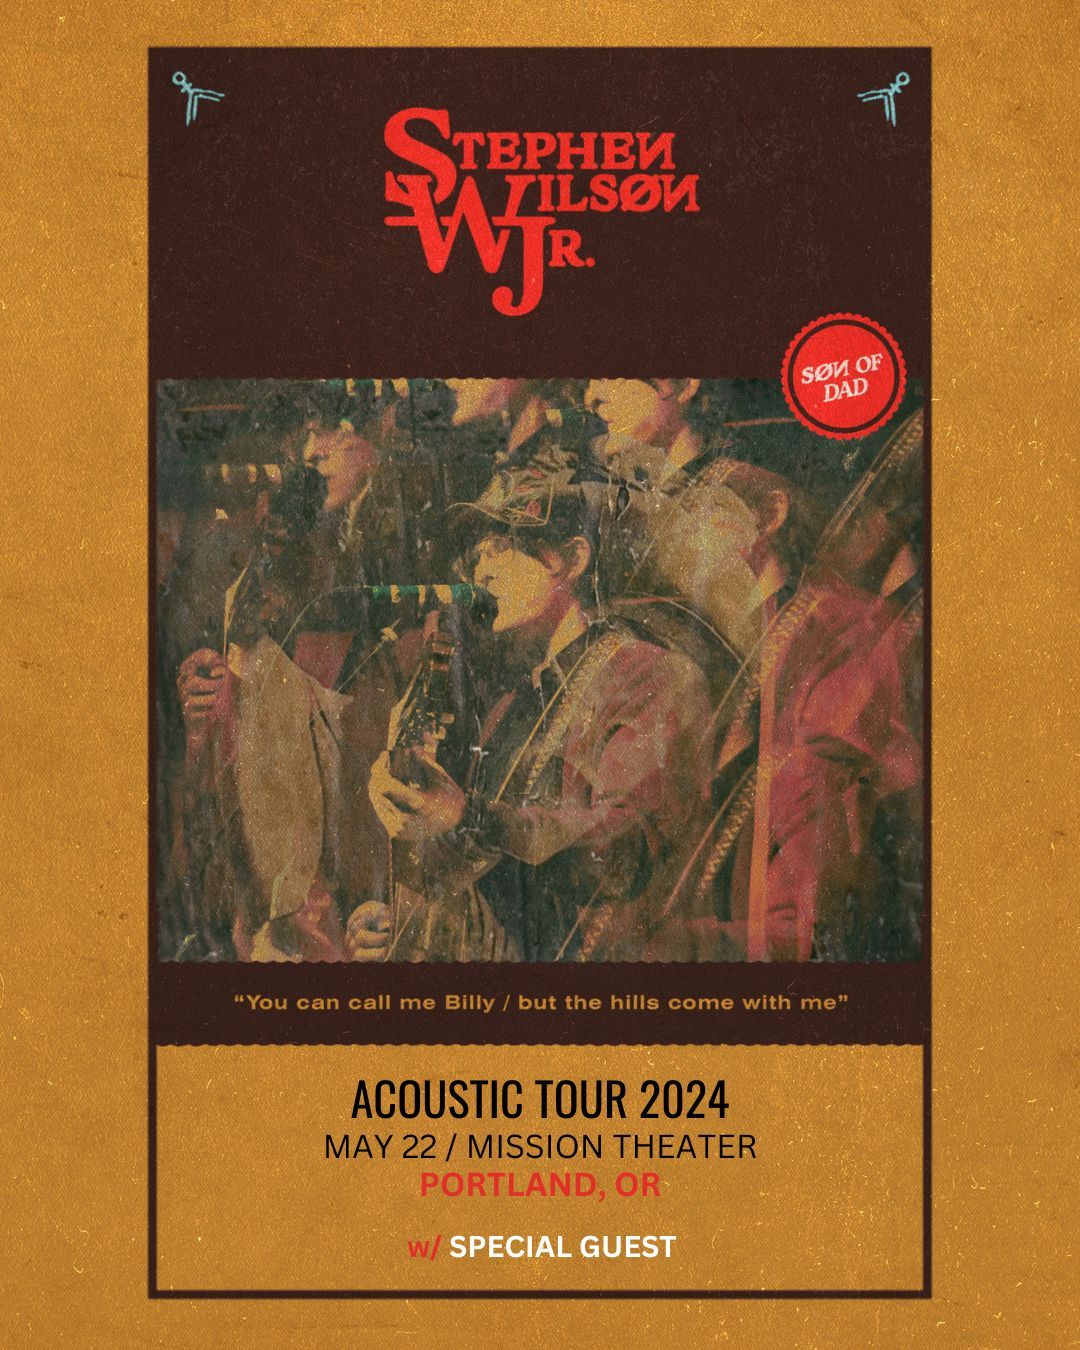 Stephen Wilson Jr. Acoustic Tour 2024